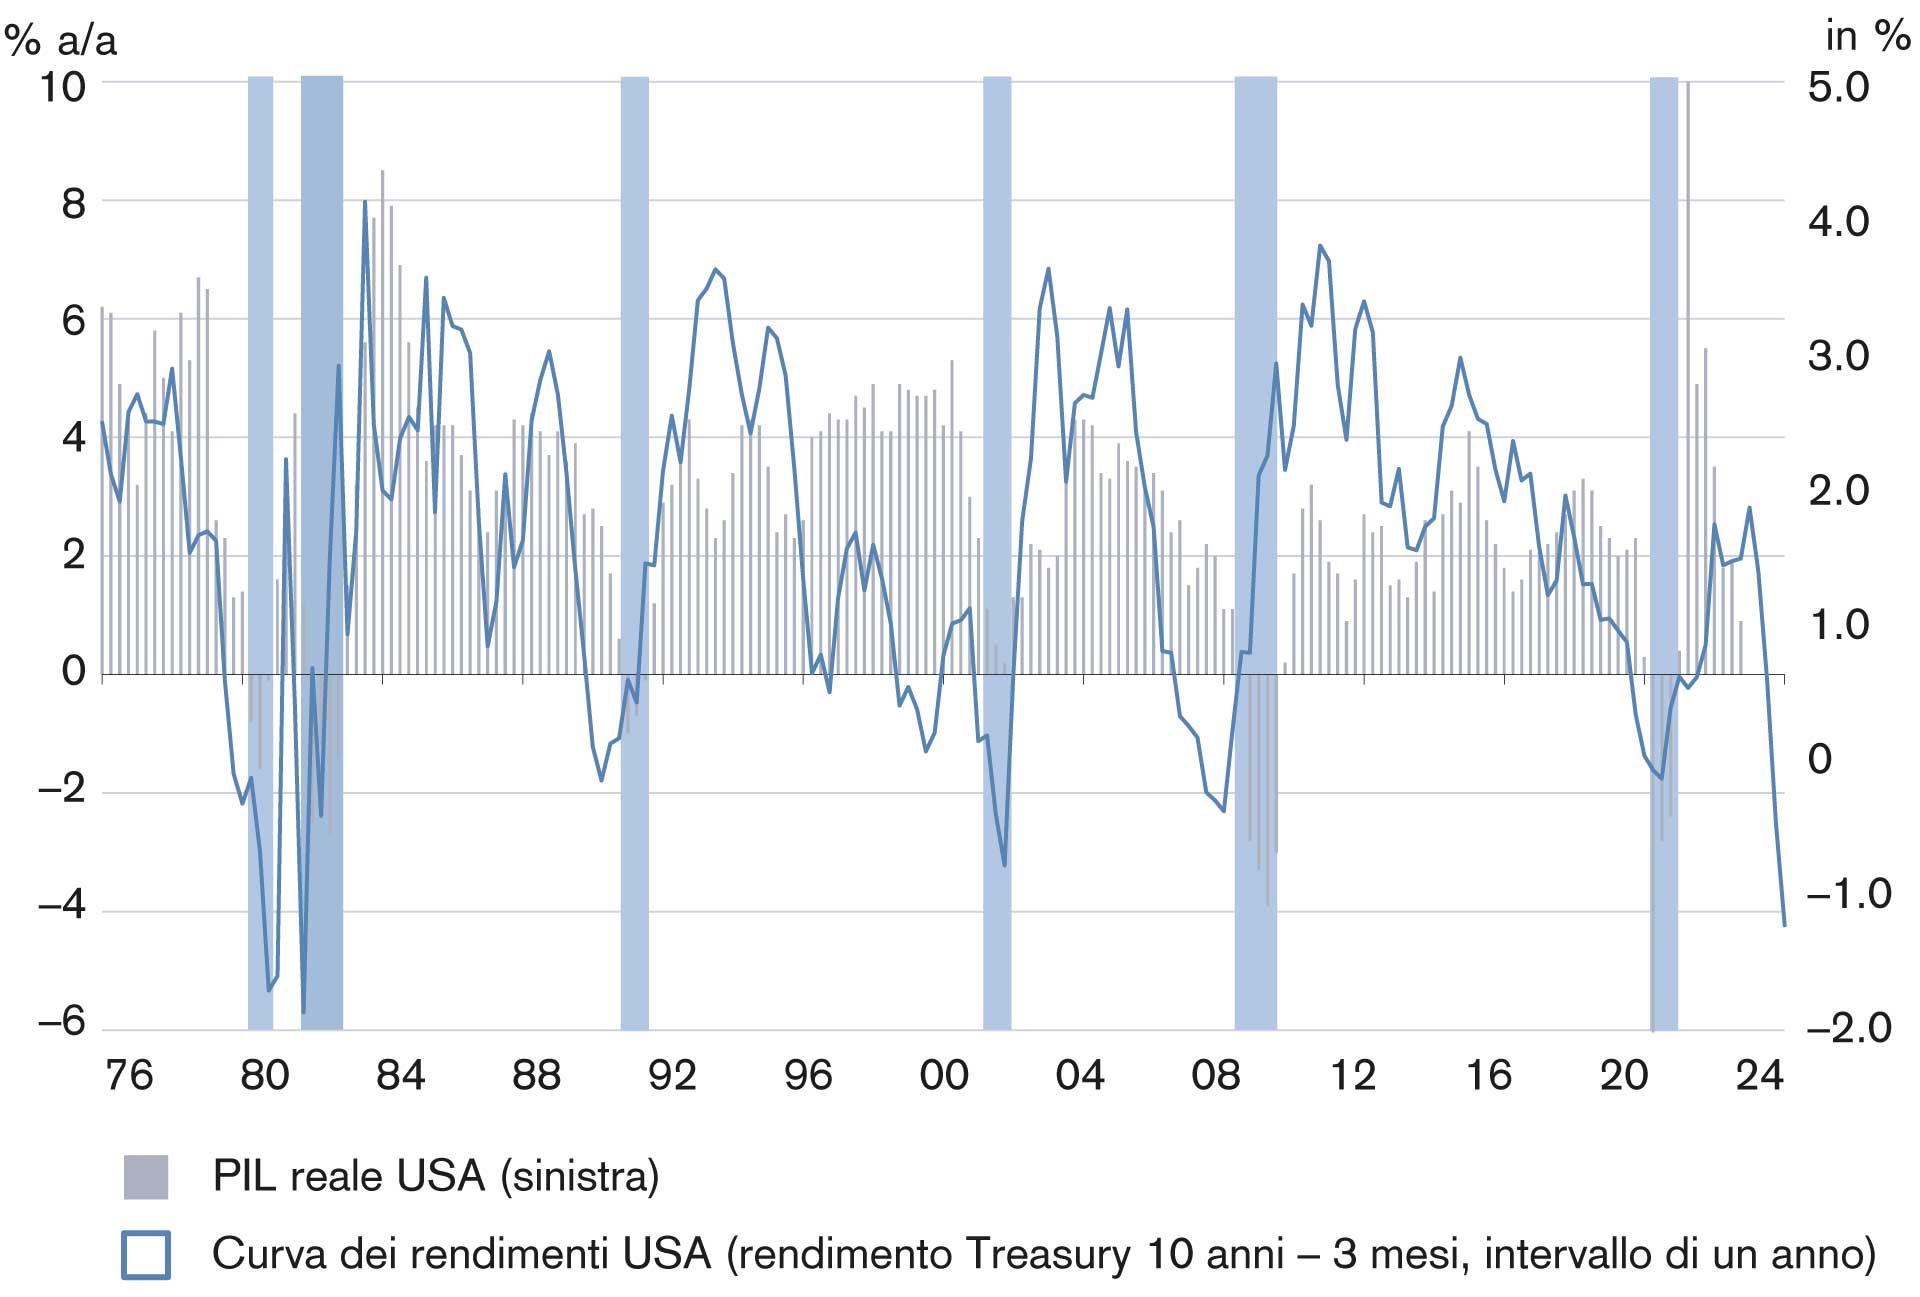 L’inversione della curva dei rendimenti negli Stati Uniti è tipicamente seguita da una recessione 